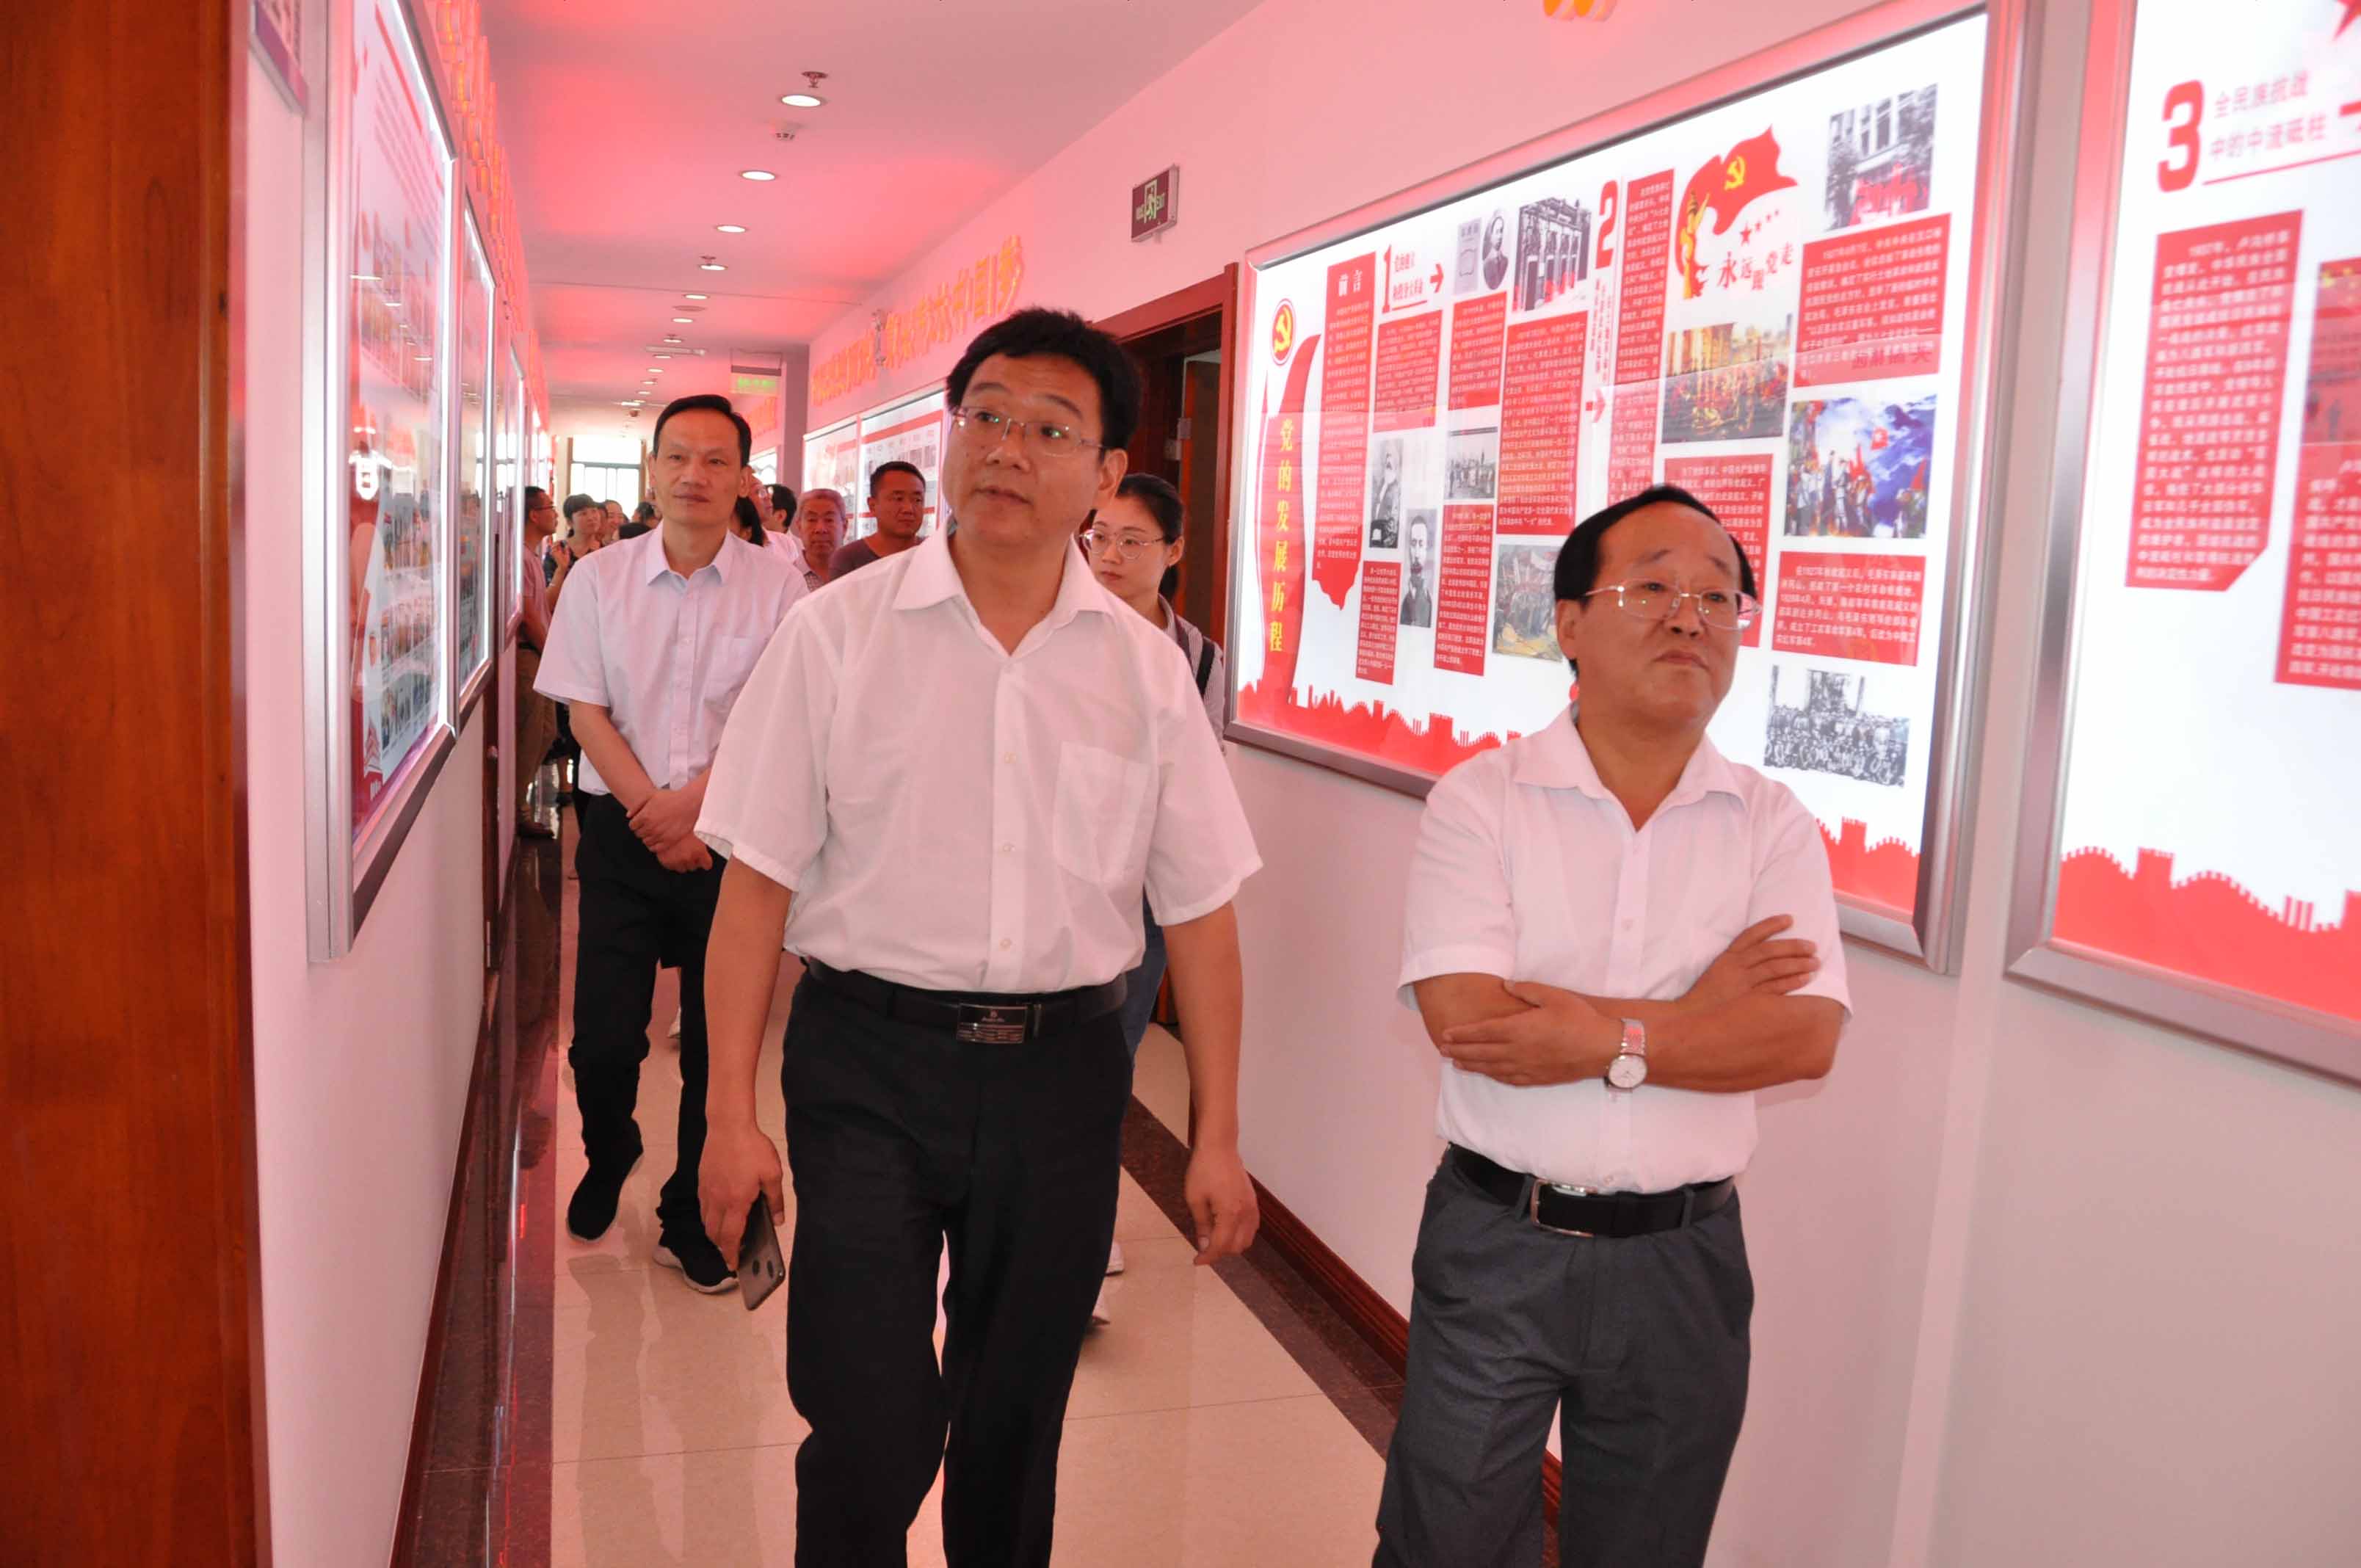 明光市统战部副部长王辉带领统战部干部培训班成员参观交流非公有制党建工作。
